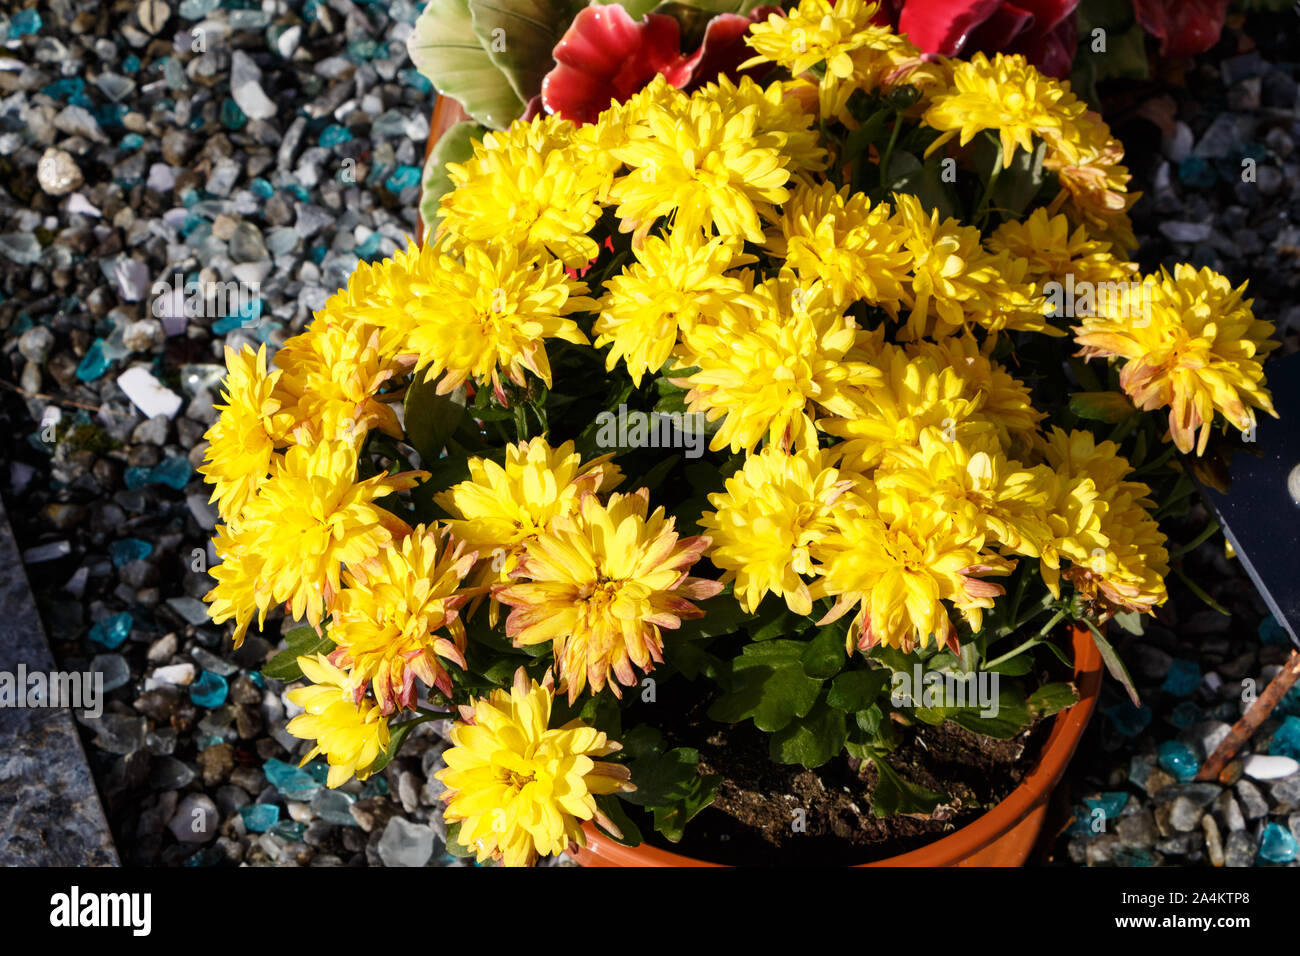 Usine de chrysanthème jaune sur une pierre tombale pour la Toussaint Banque D'Images